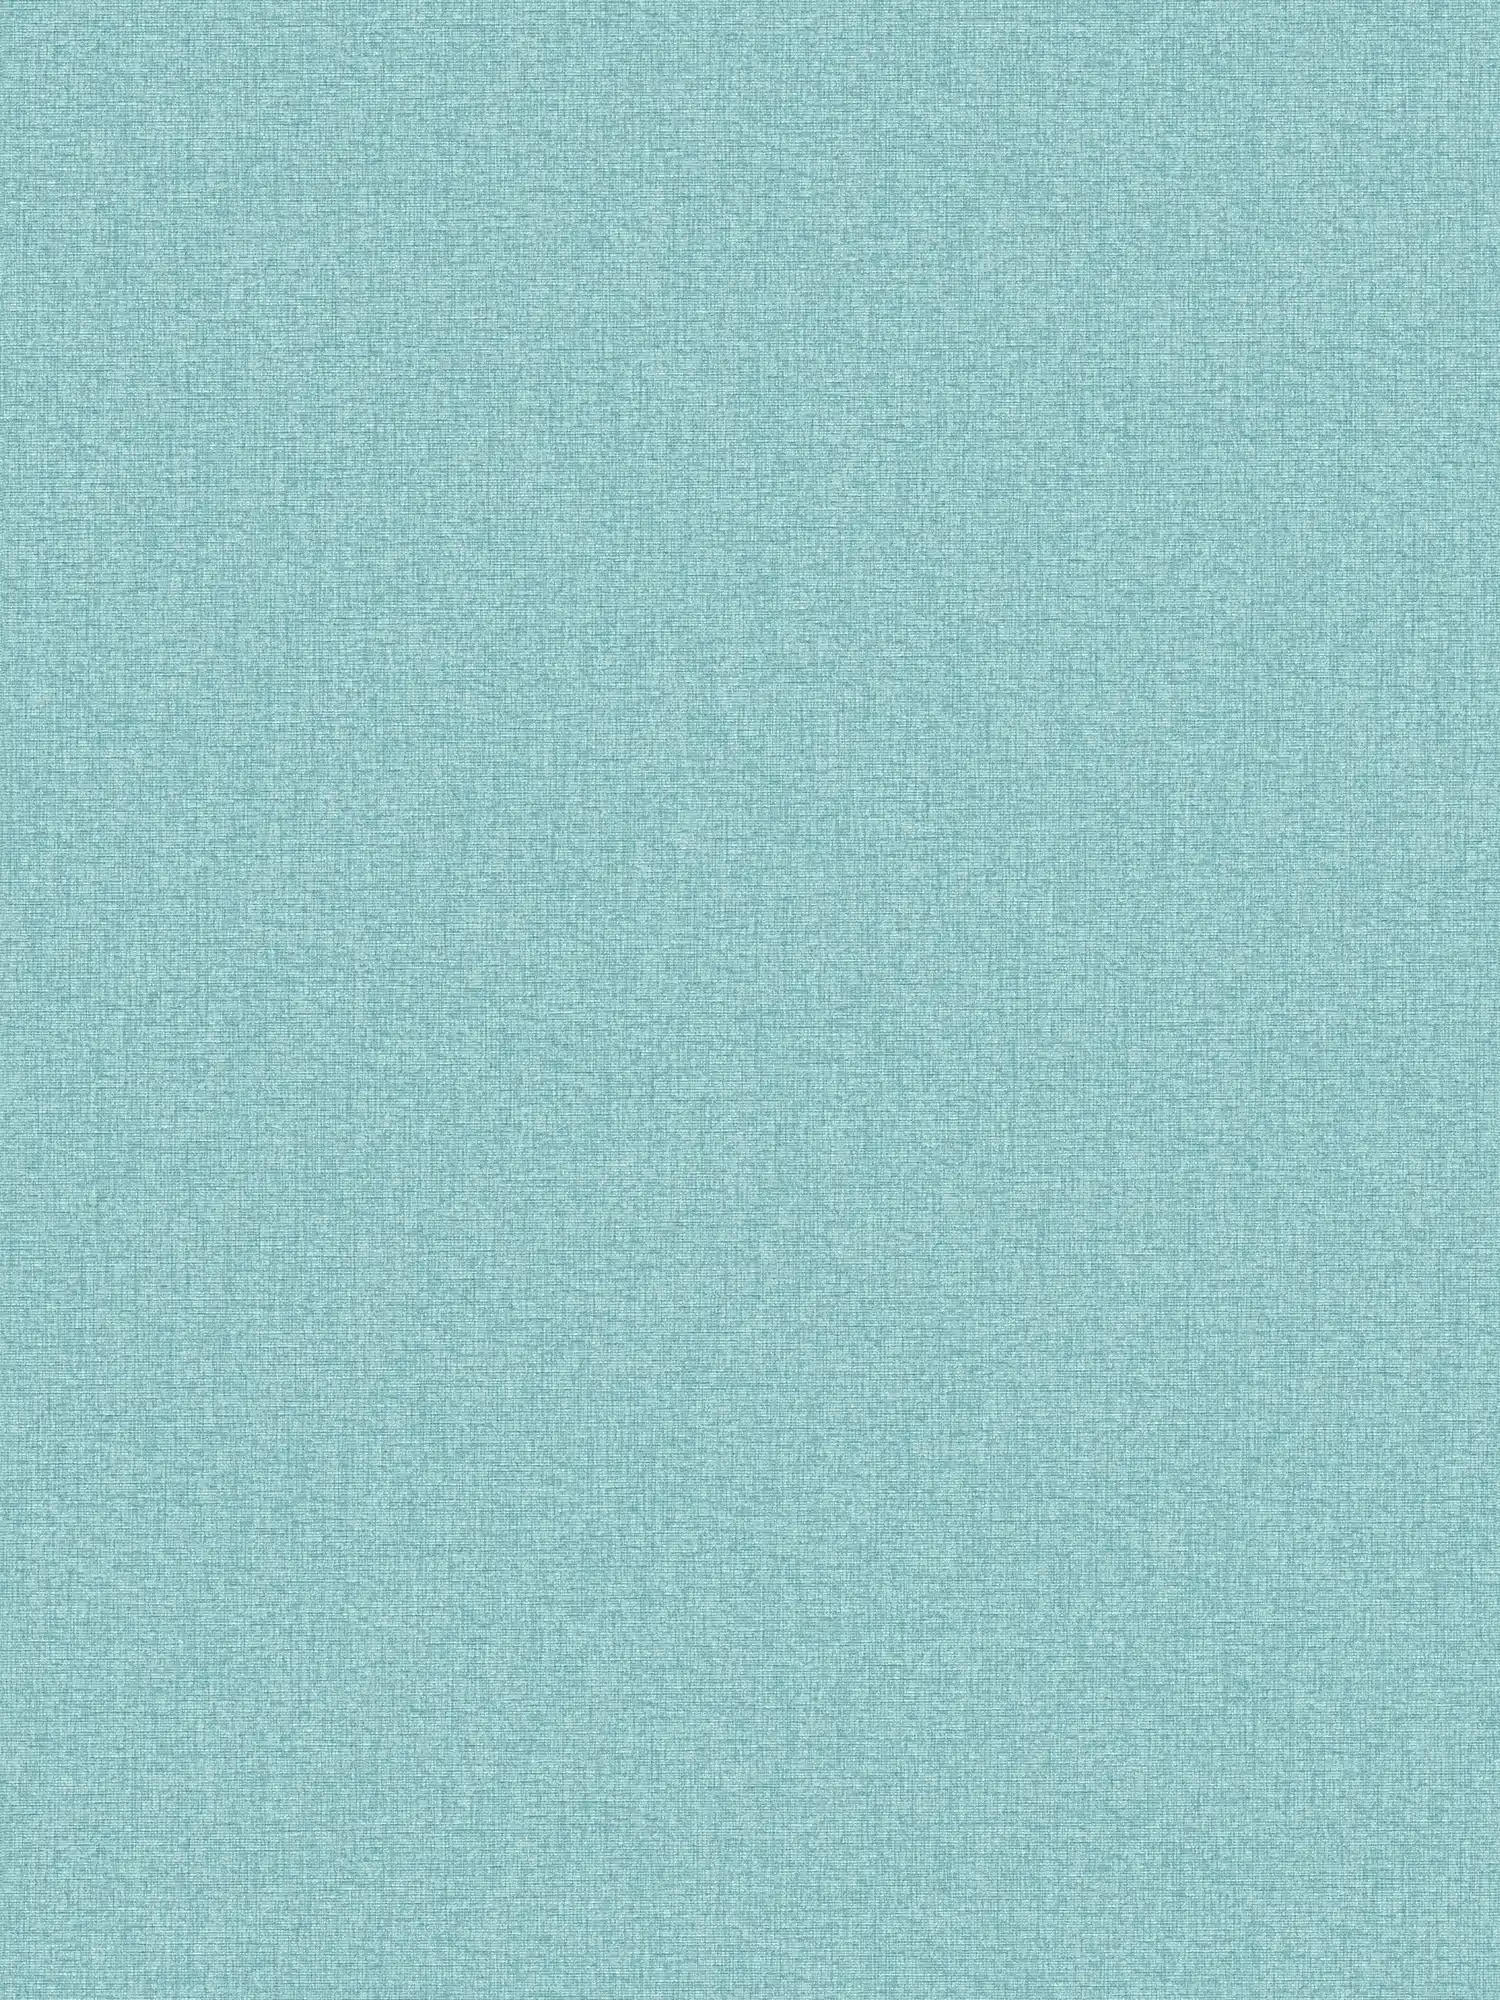 papier peint en papier intissé uni aspect tissé avec légère structure, mat - turquoise, bleu, bleu ciel
